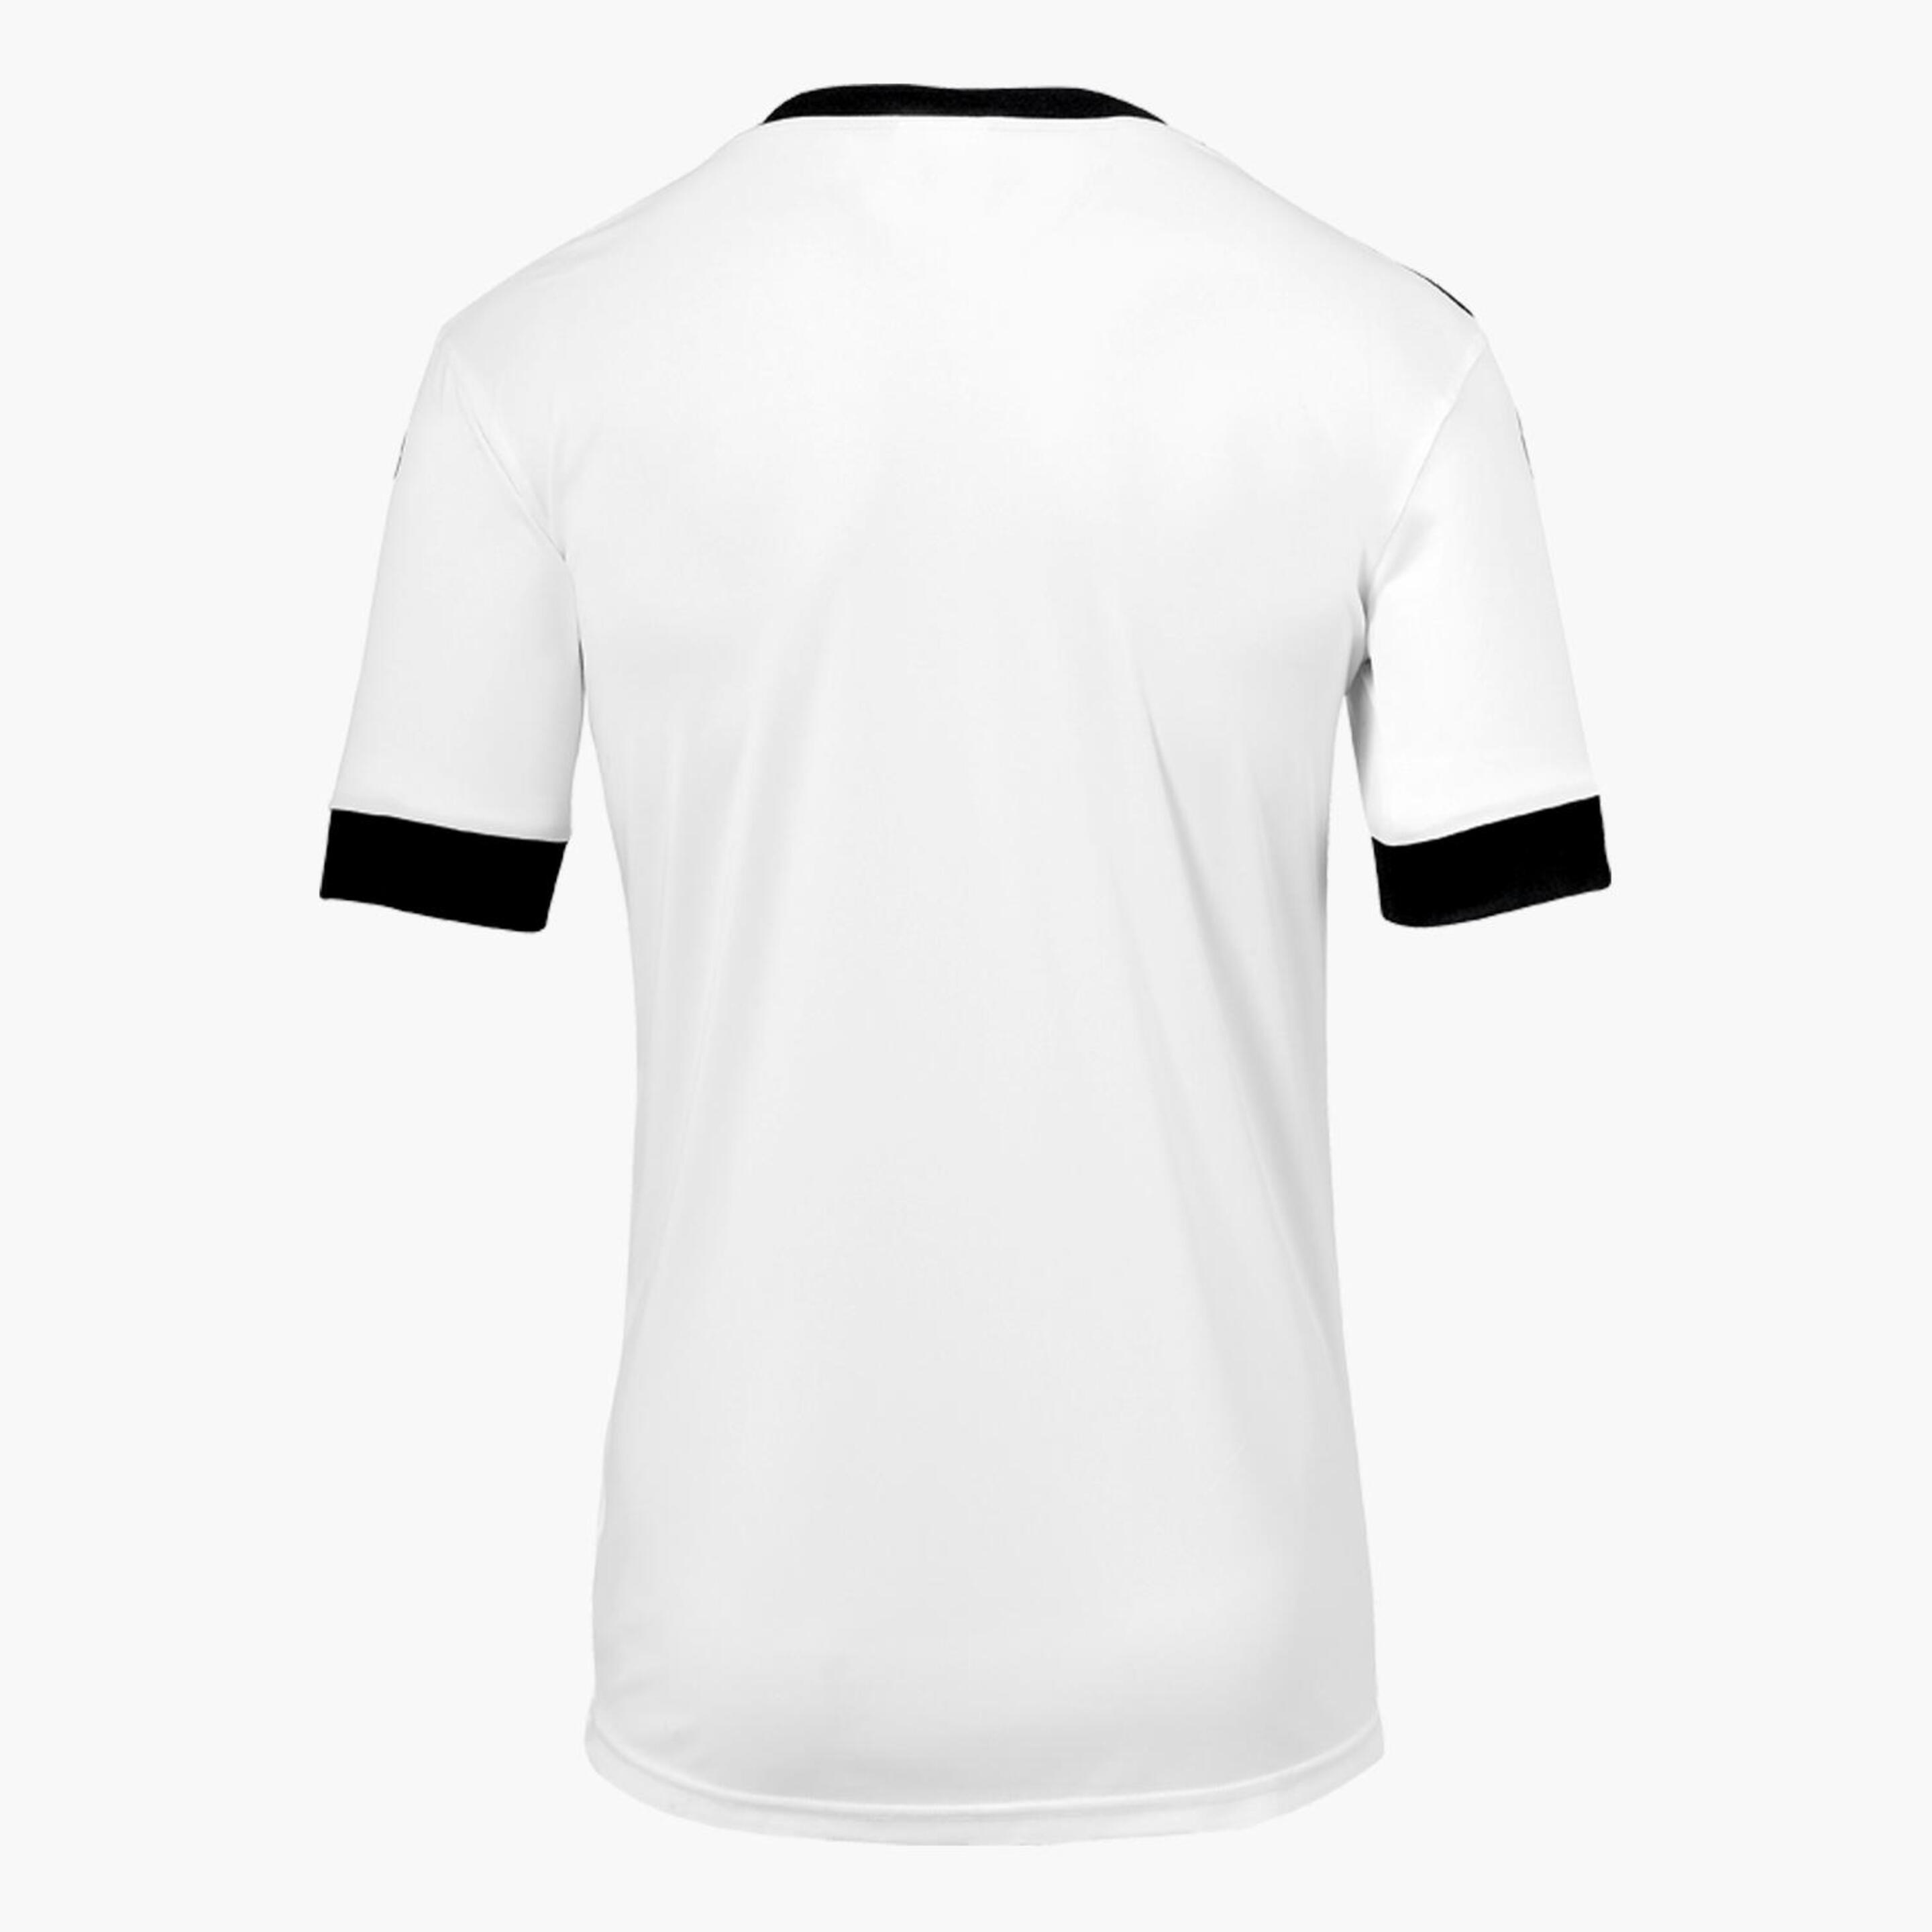 T-shirt Uhlsport Offense 23